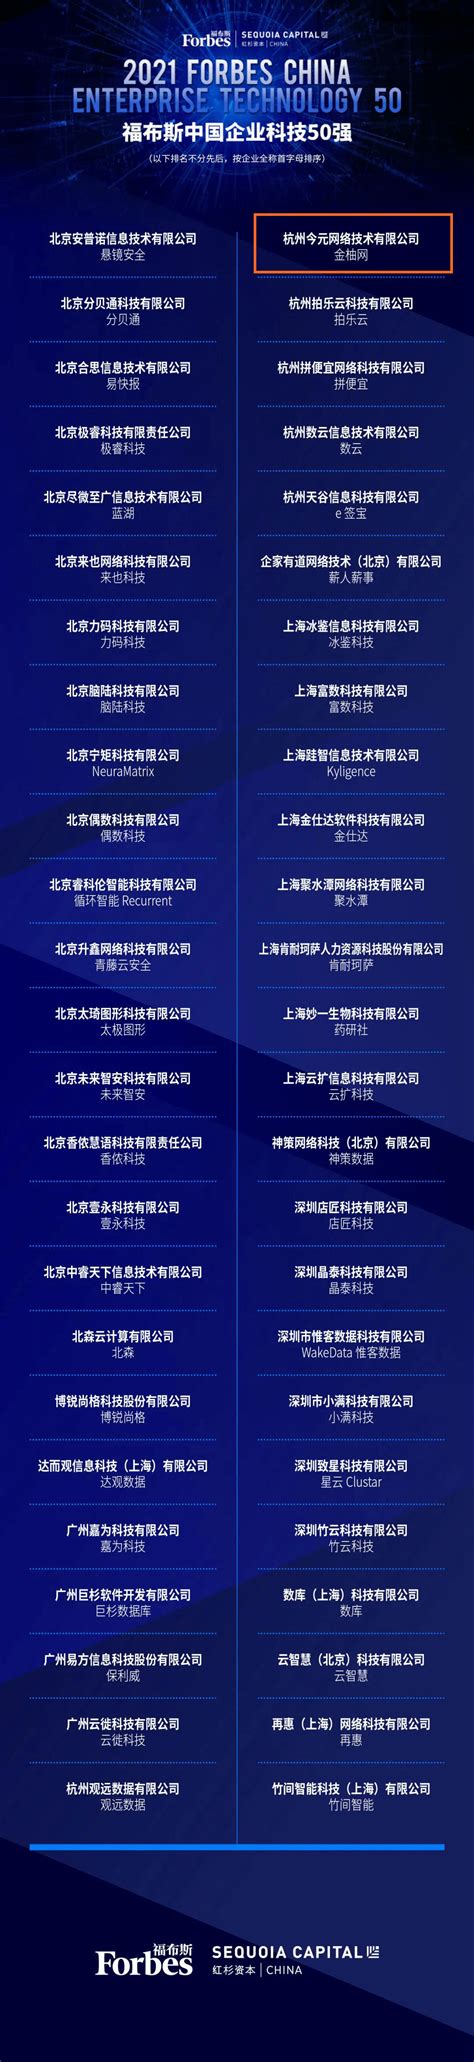 金柚网荣膺21世纪中国最佳商业模式评选榜单_推荐_i黑马